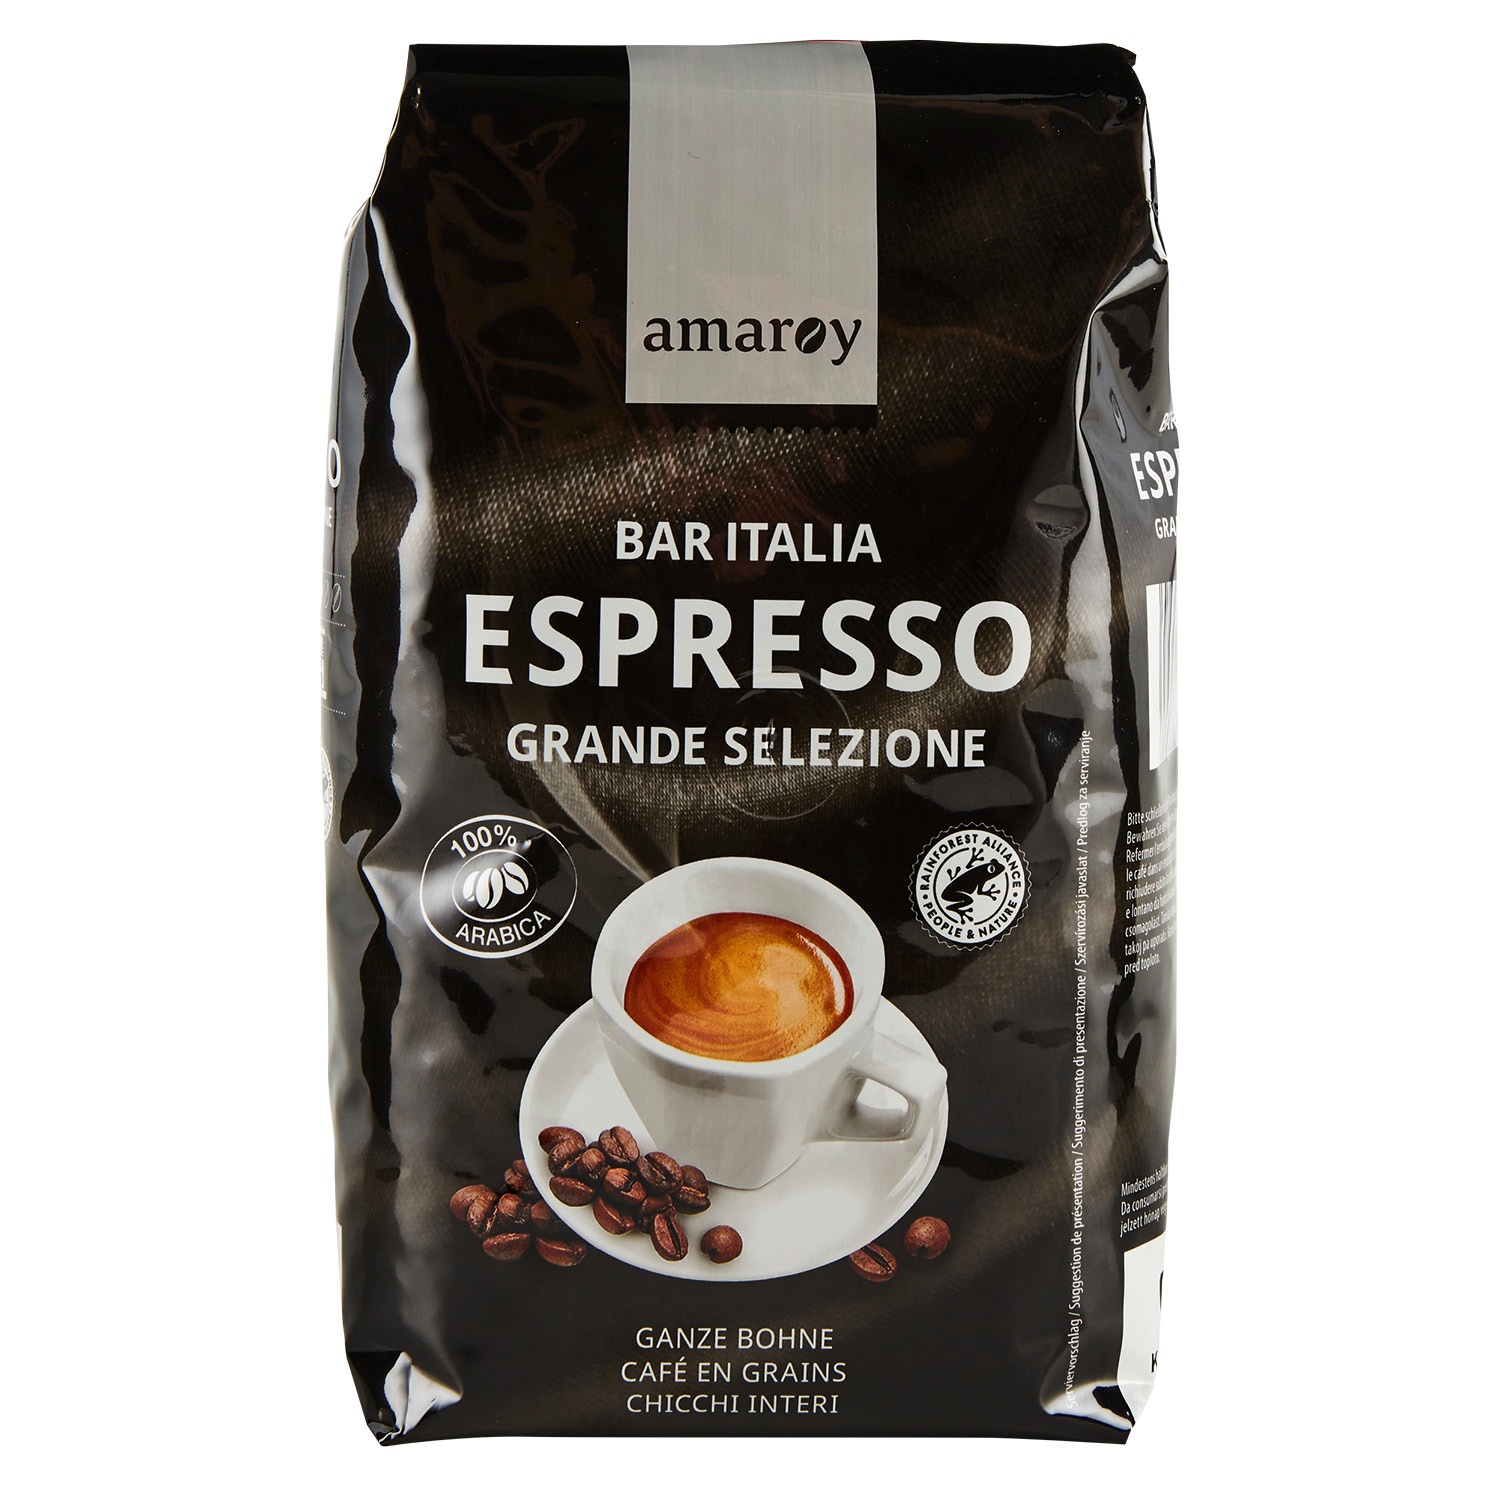 AMAROY Bar Italia Espresso Grande Selezione 500 g